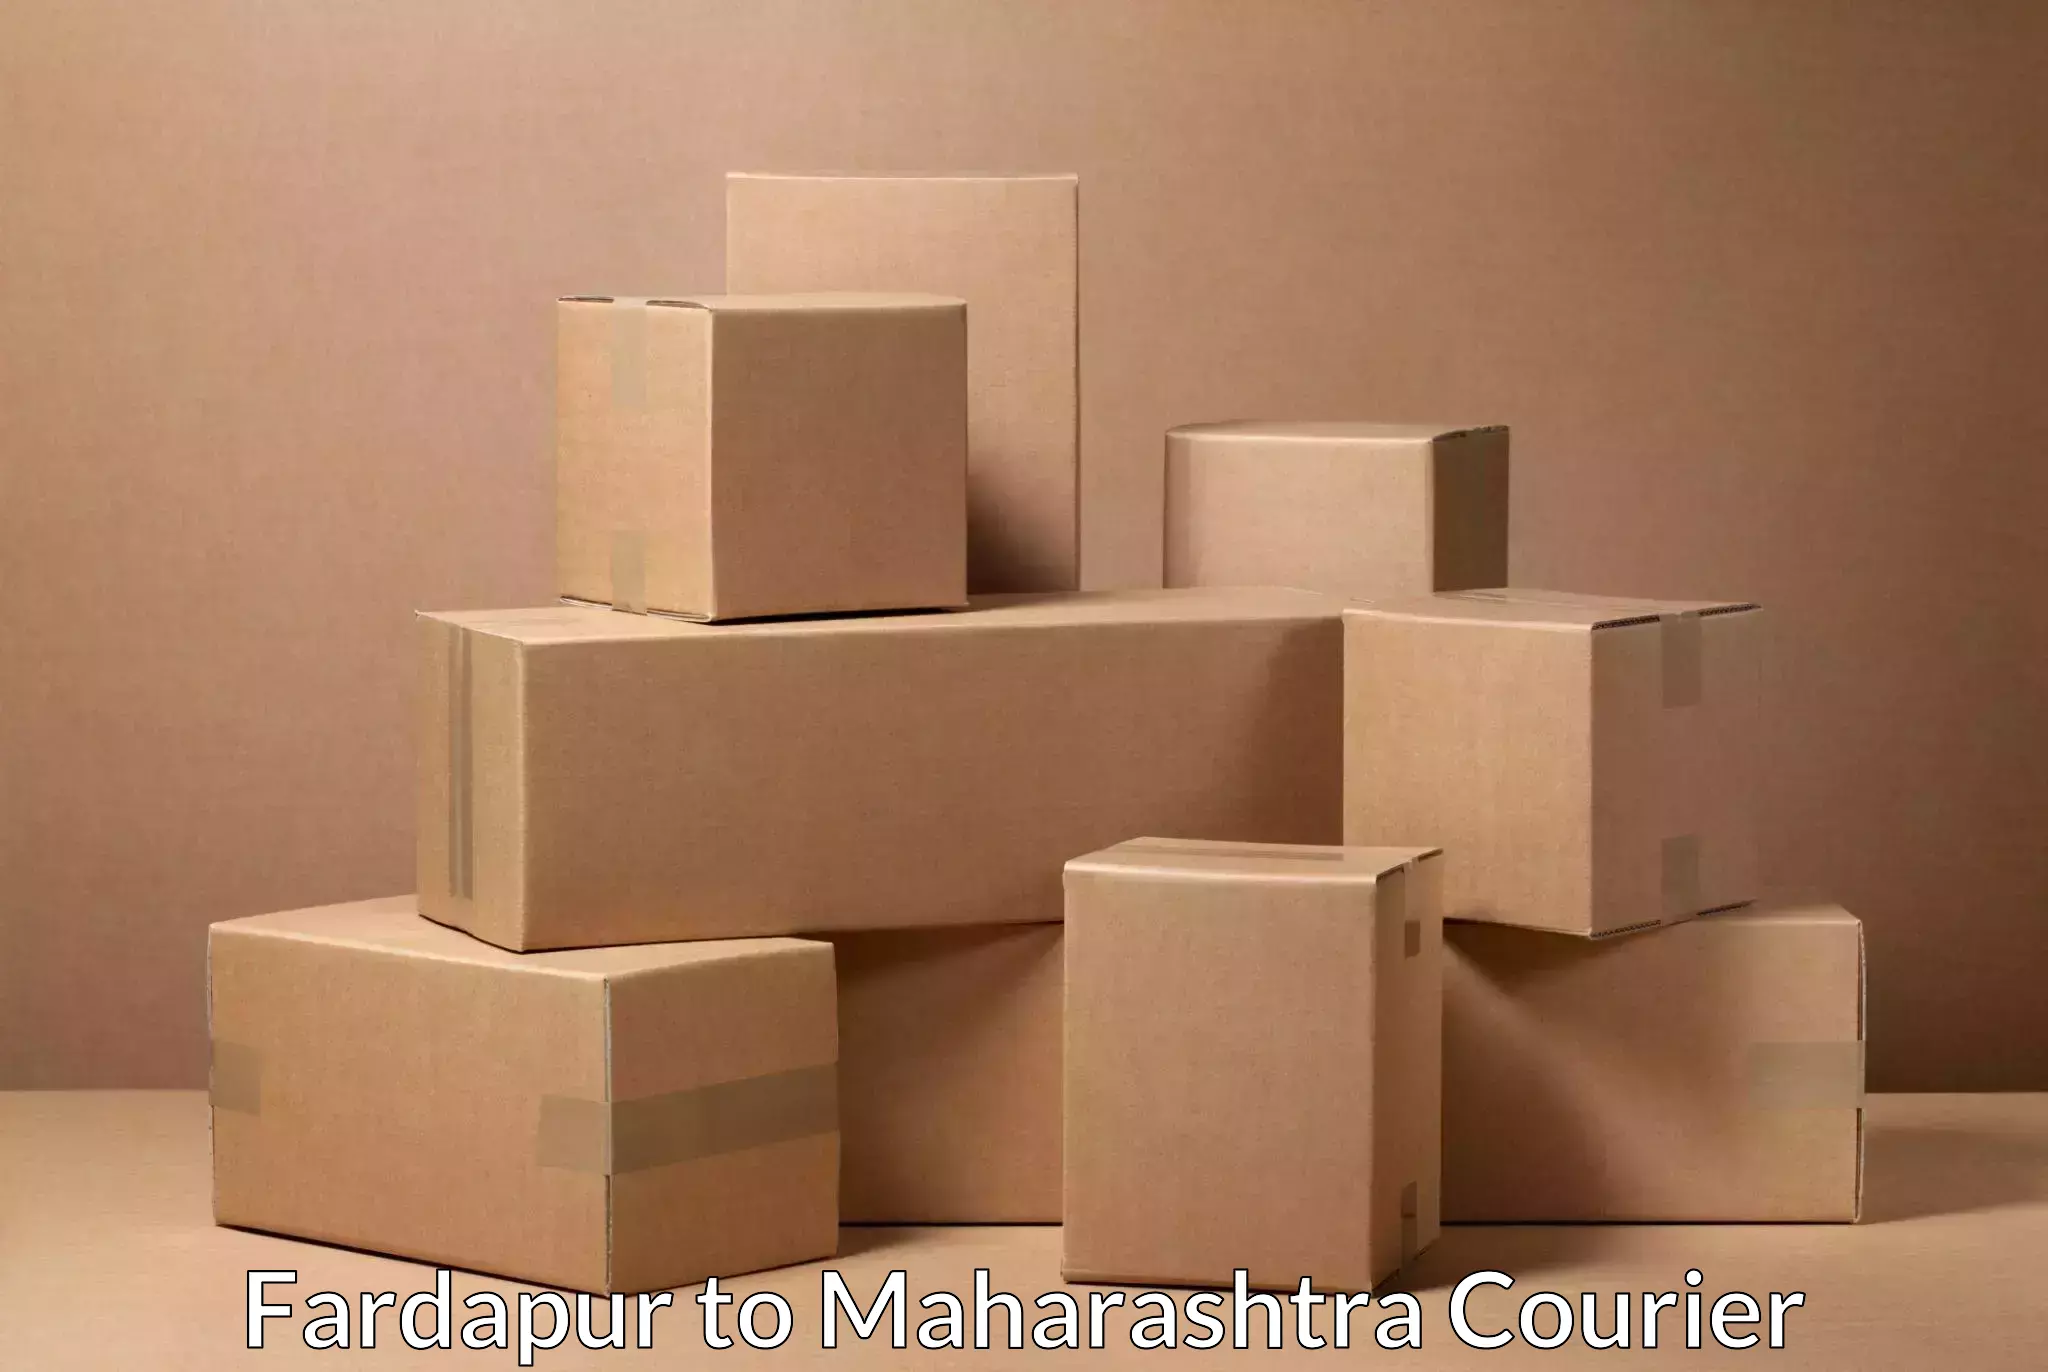 Pharmaceutical courier Fardapur to Maharashtra